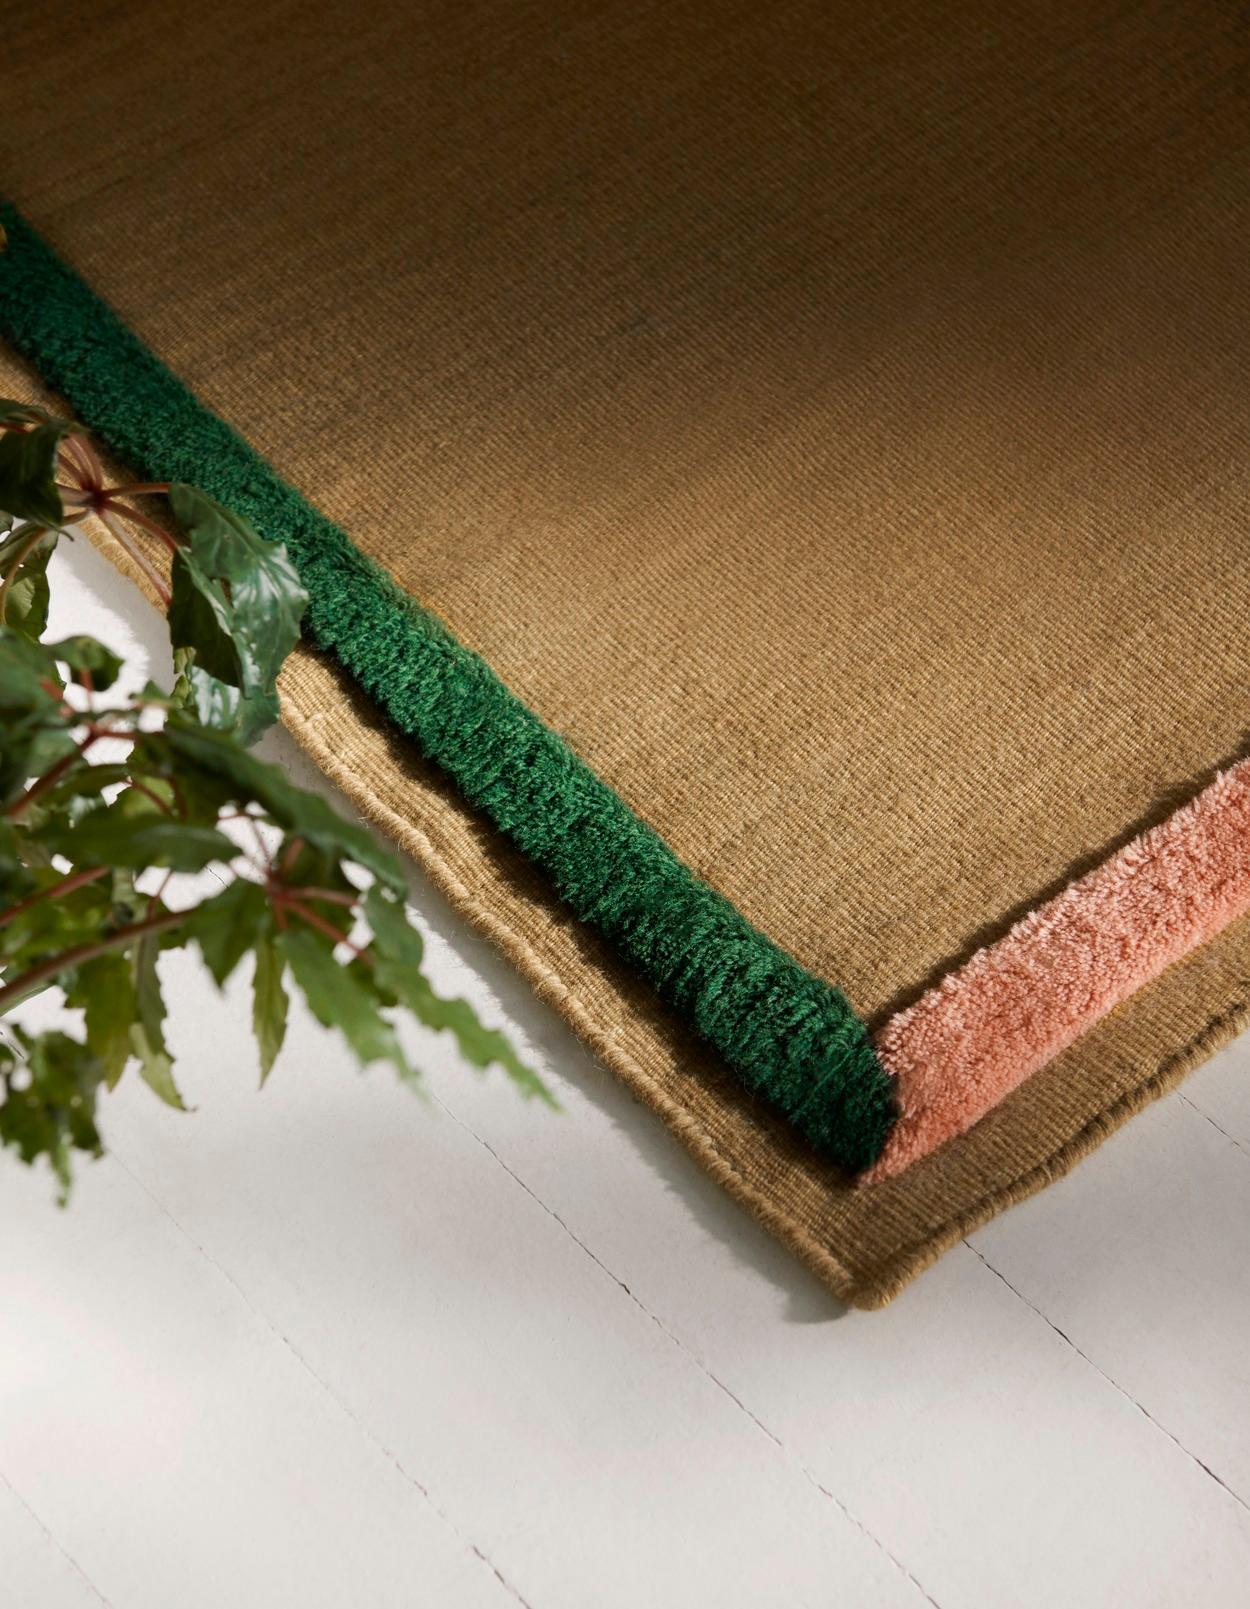 Fabriqué à 100 % en laine de Nouvelle-Zélande, le tapis Framed apporte des touches de couleur sans envahir la pièce. Fabriqué à partir de deux techniques de fabrication de tapis, le tapis 'All the Way to Paris' Framed oppose une bordure tuftée